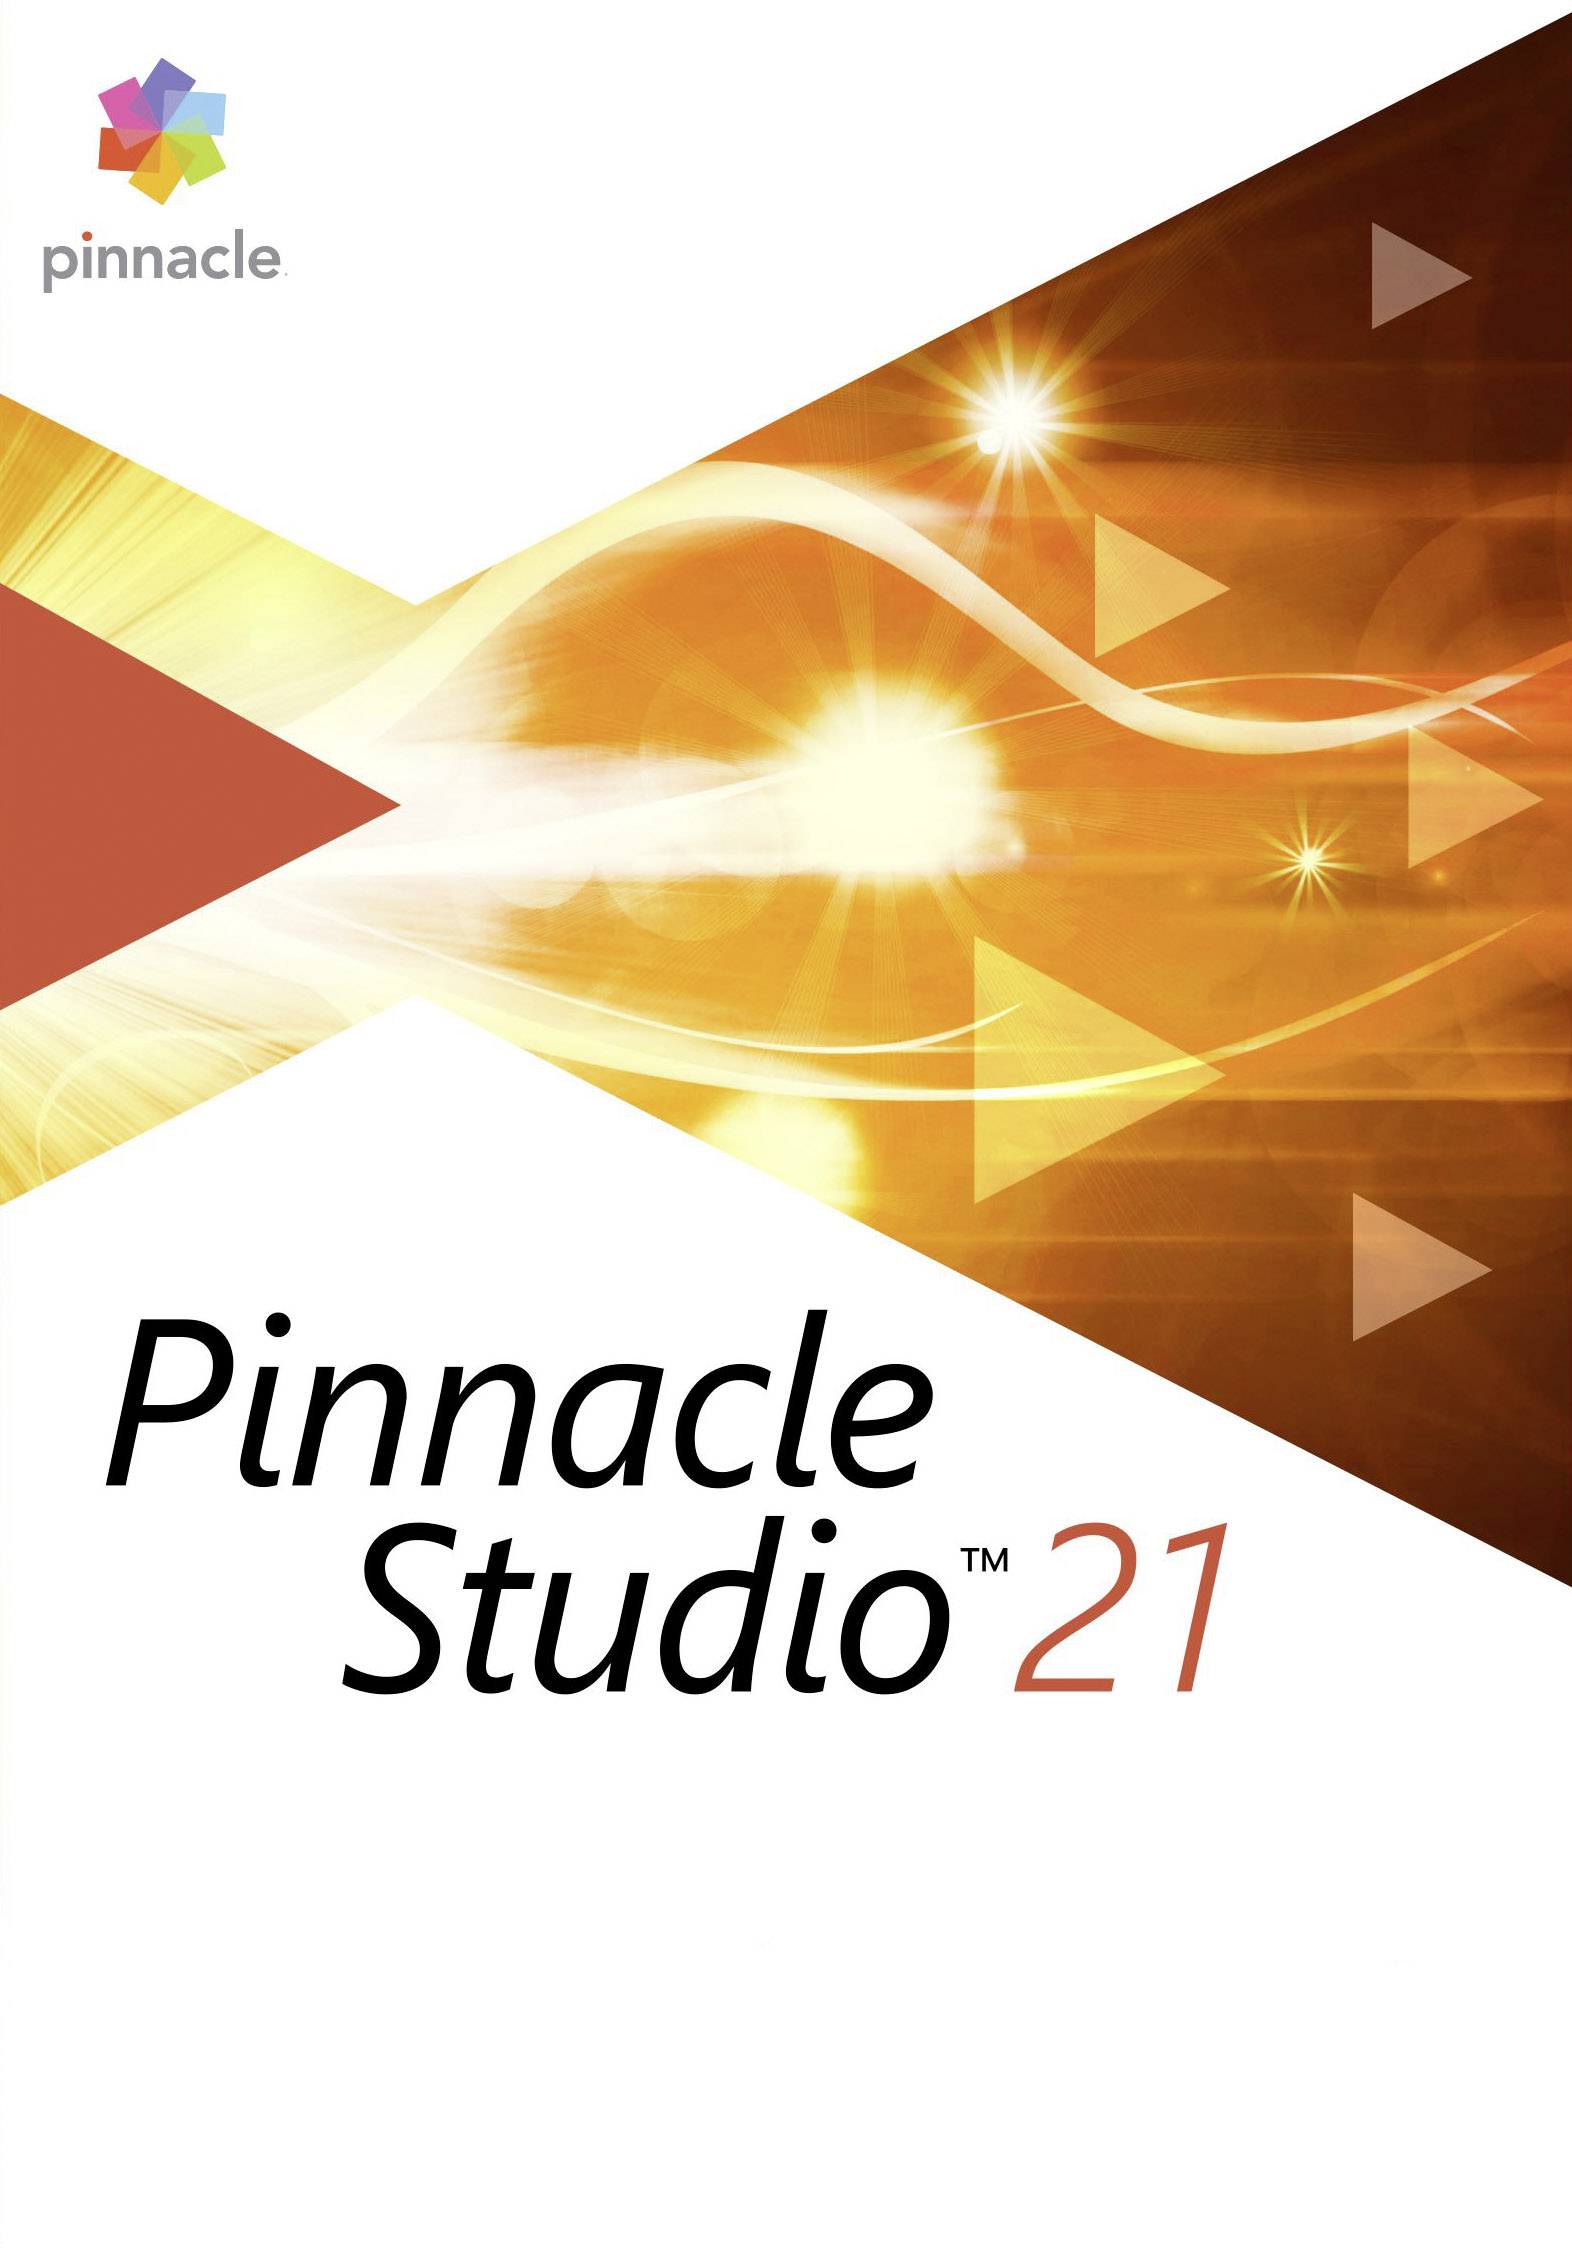 pinnacle studio 21 editing